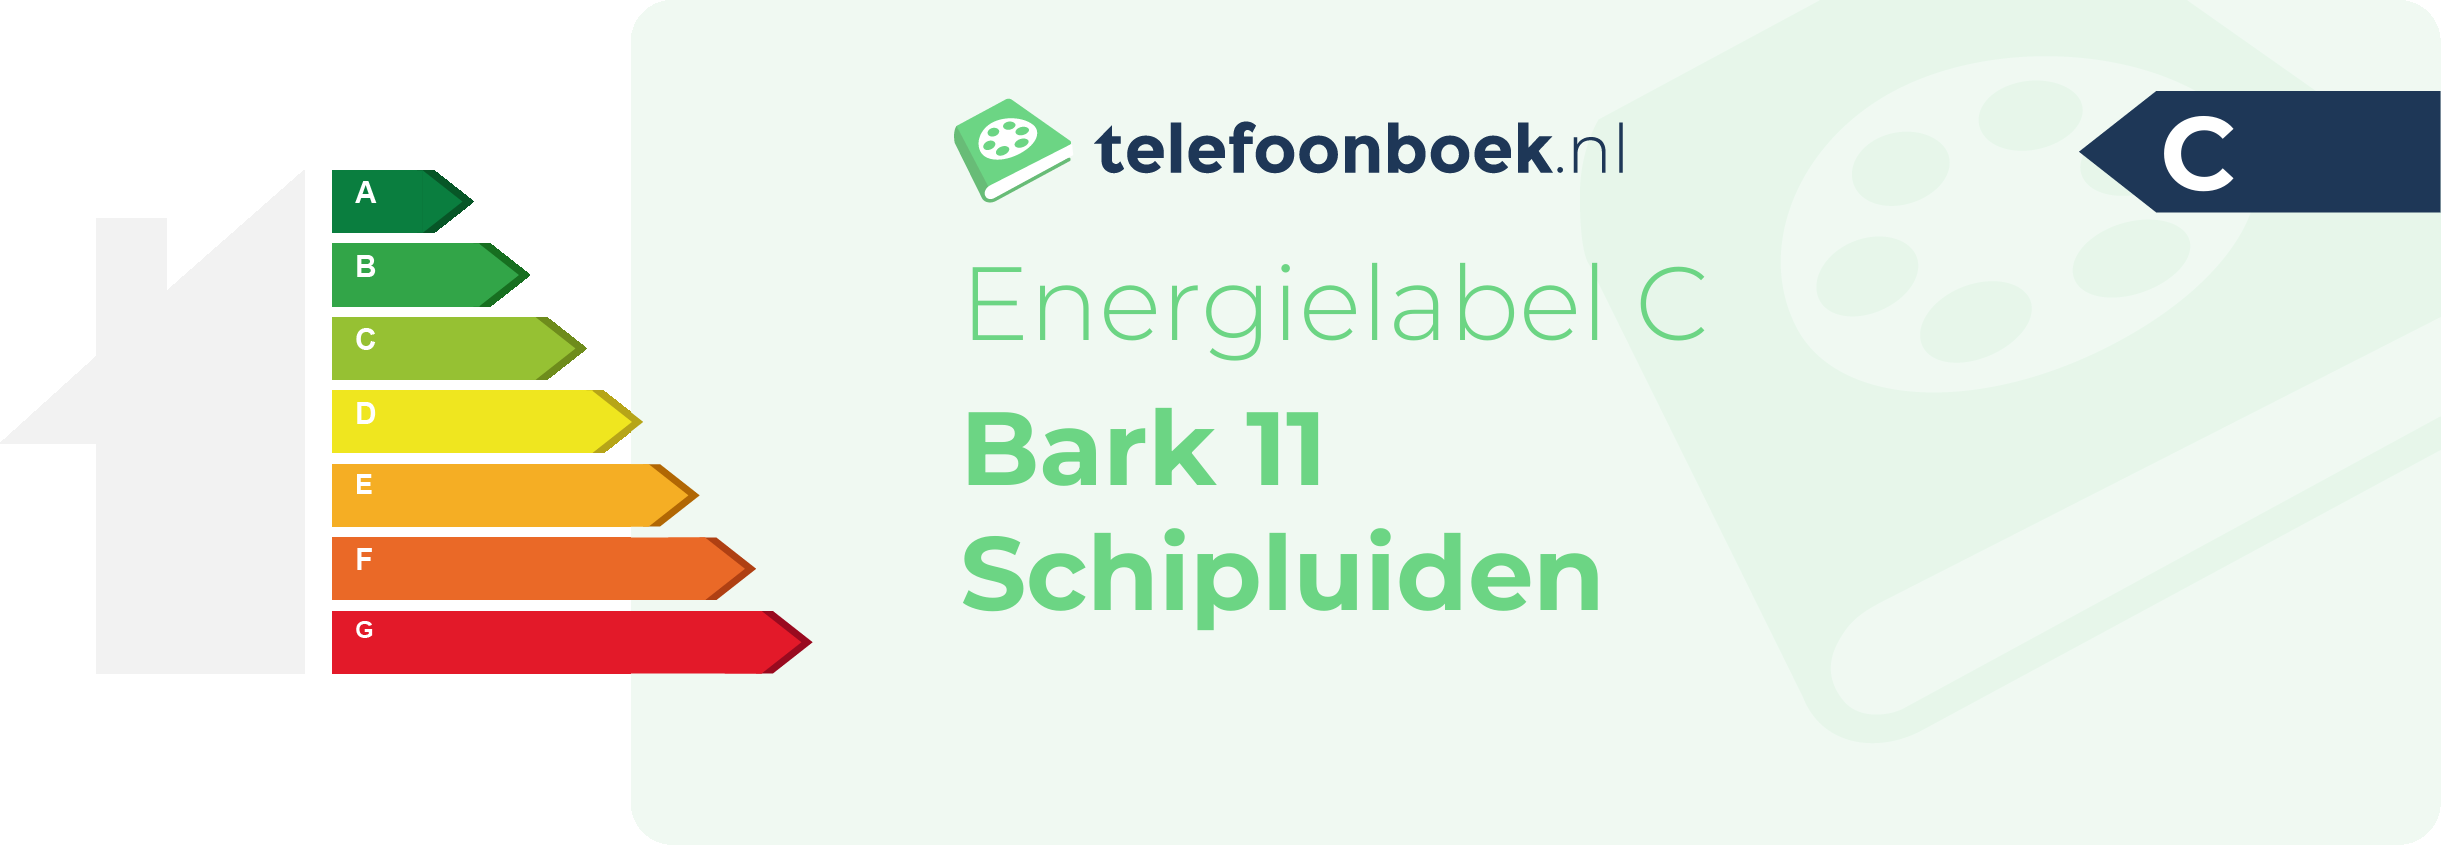 Energielabel Bark 11 Schipluiden